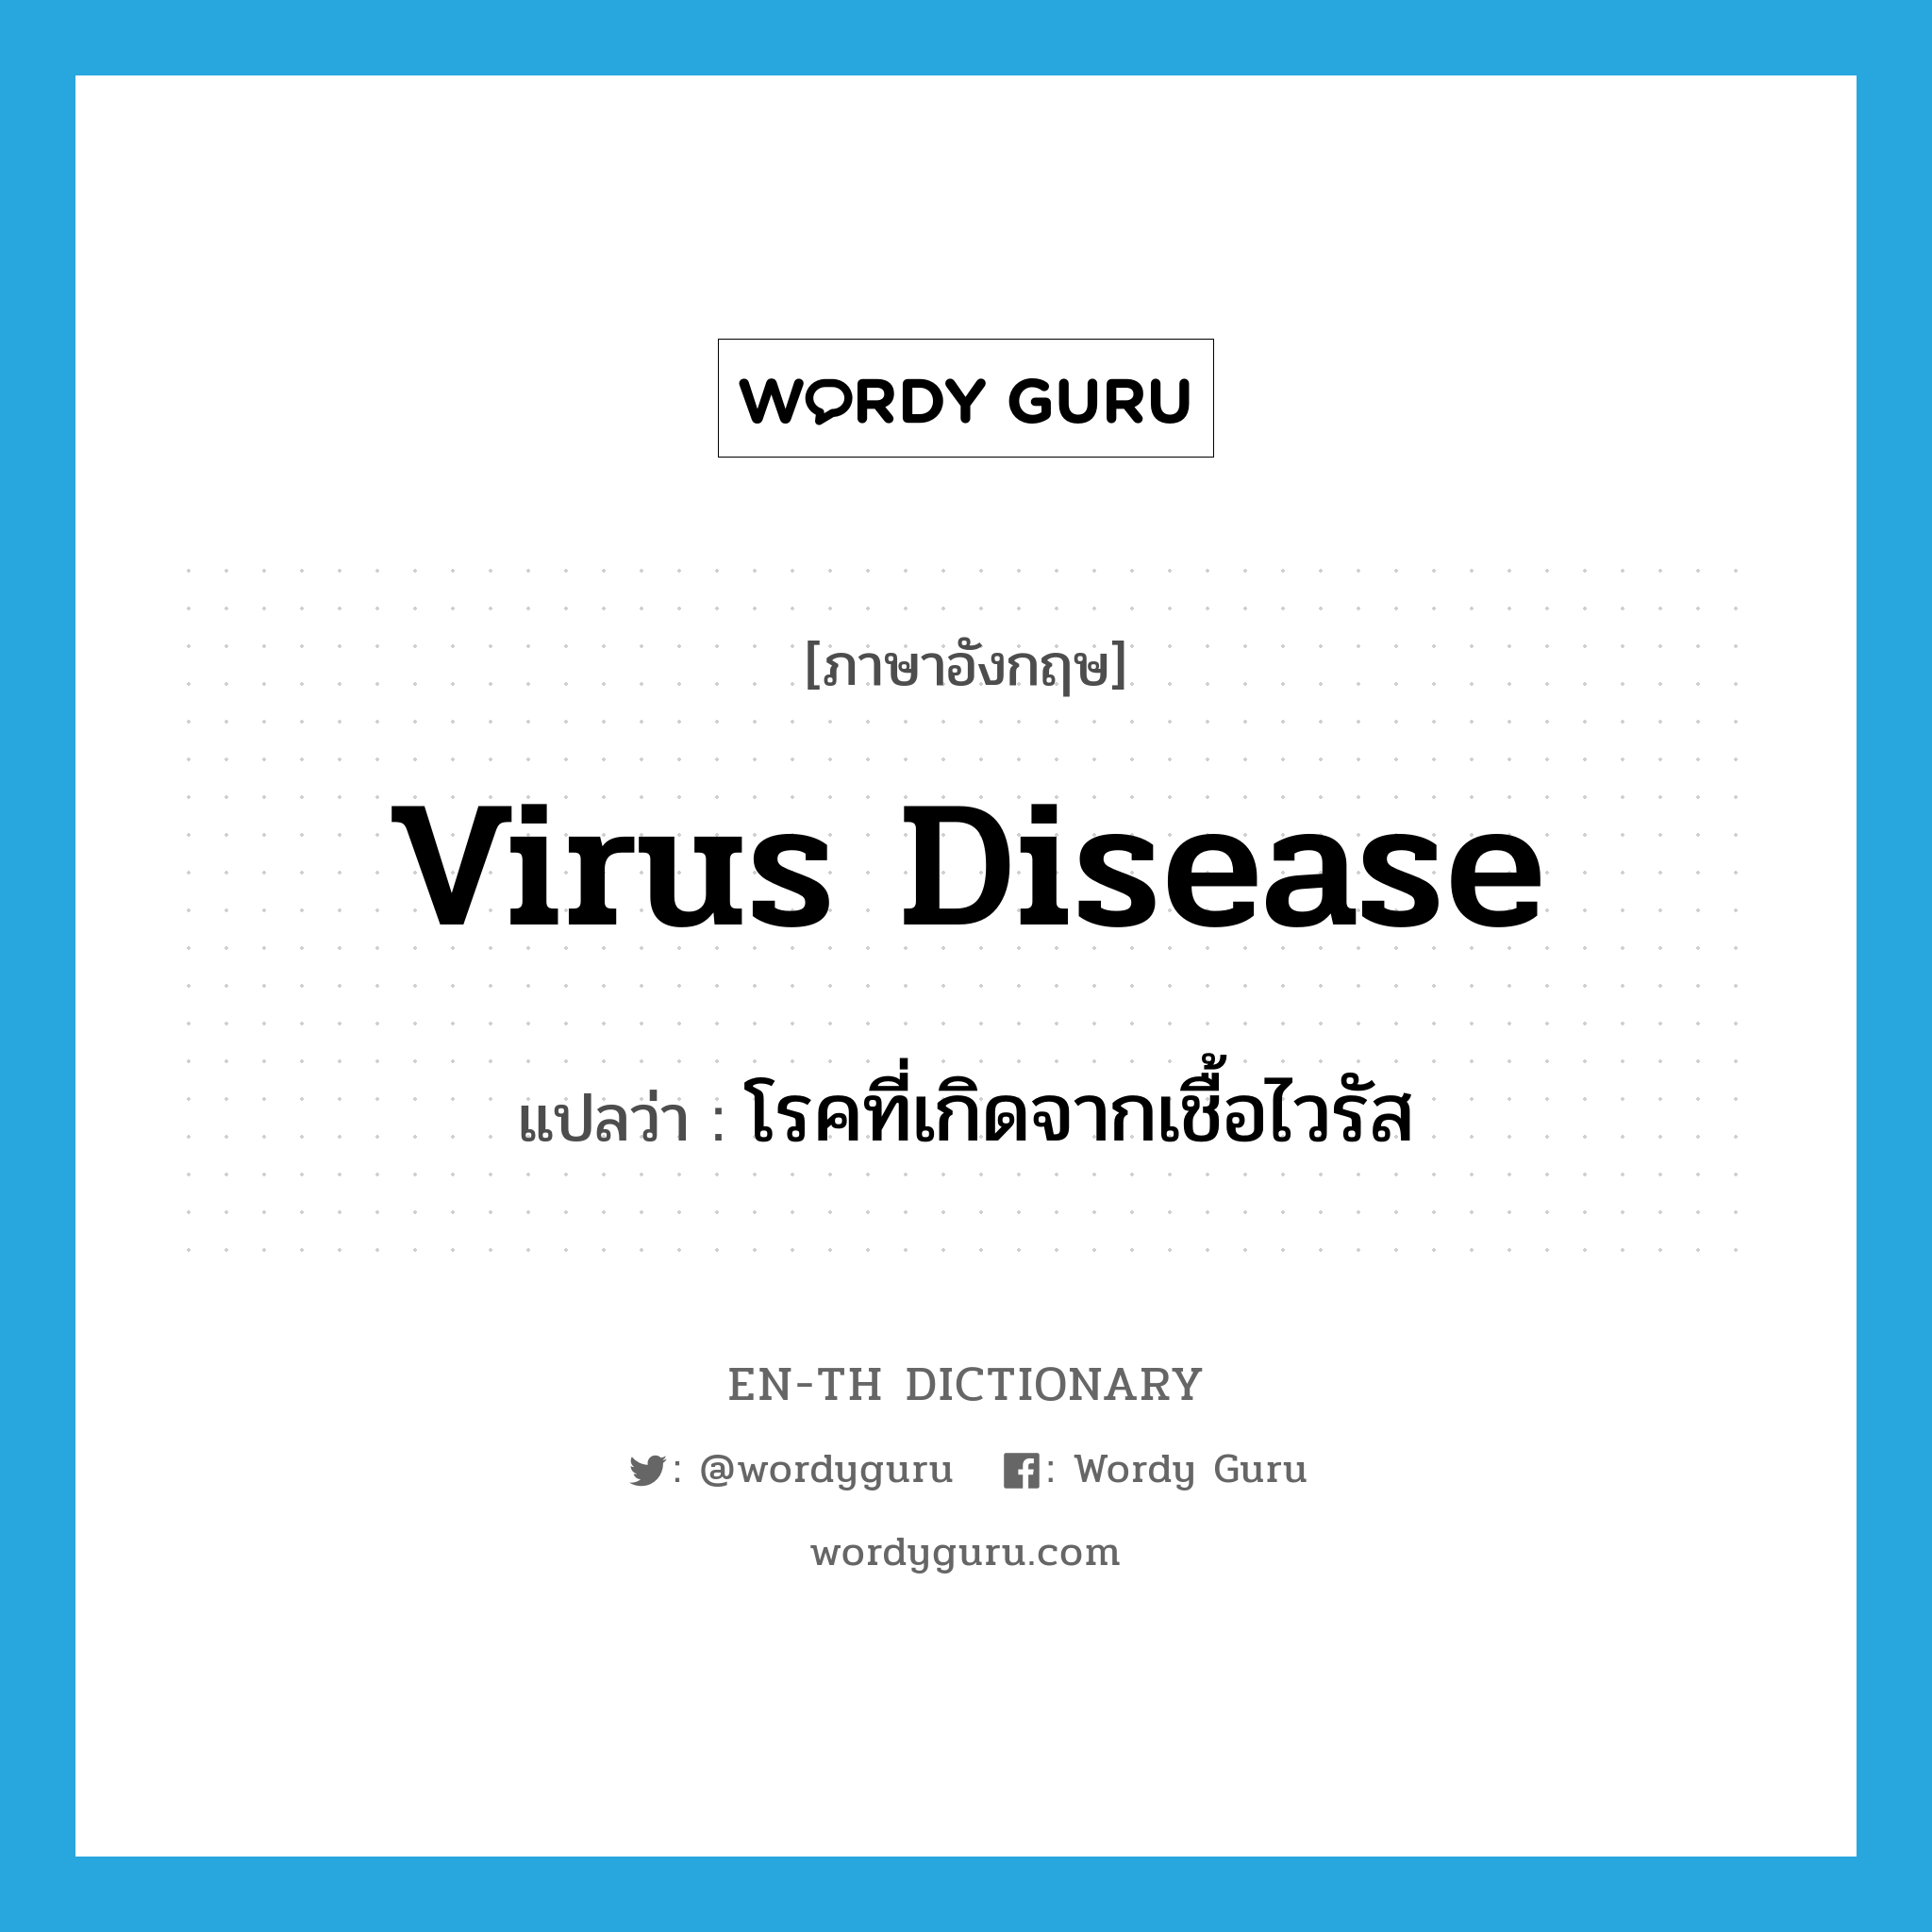 virus disease แปลว่า?, คำศัพท์ภาษาอังกฤษ virus disease แปลว่า โรคที่เกิดจากเชื้อไวรัส ประเภท N หมวด N